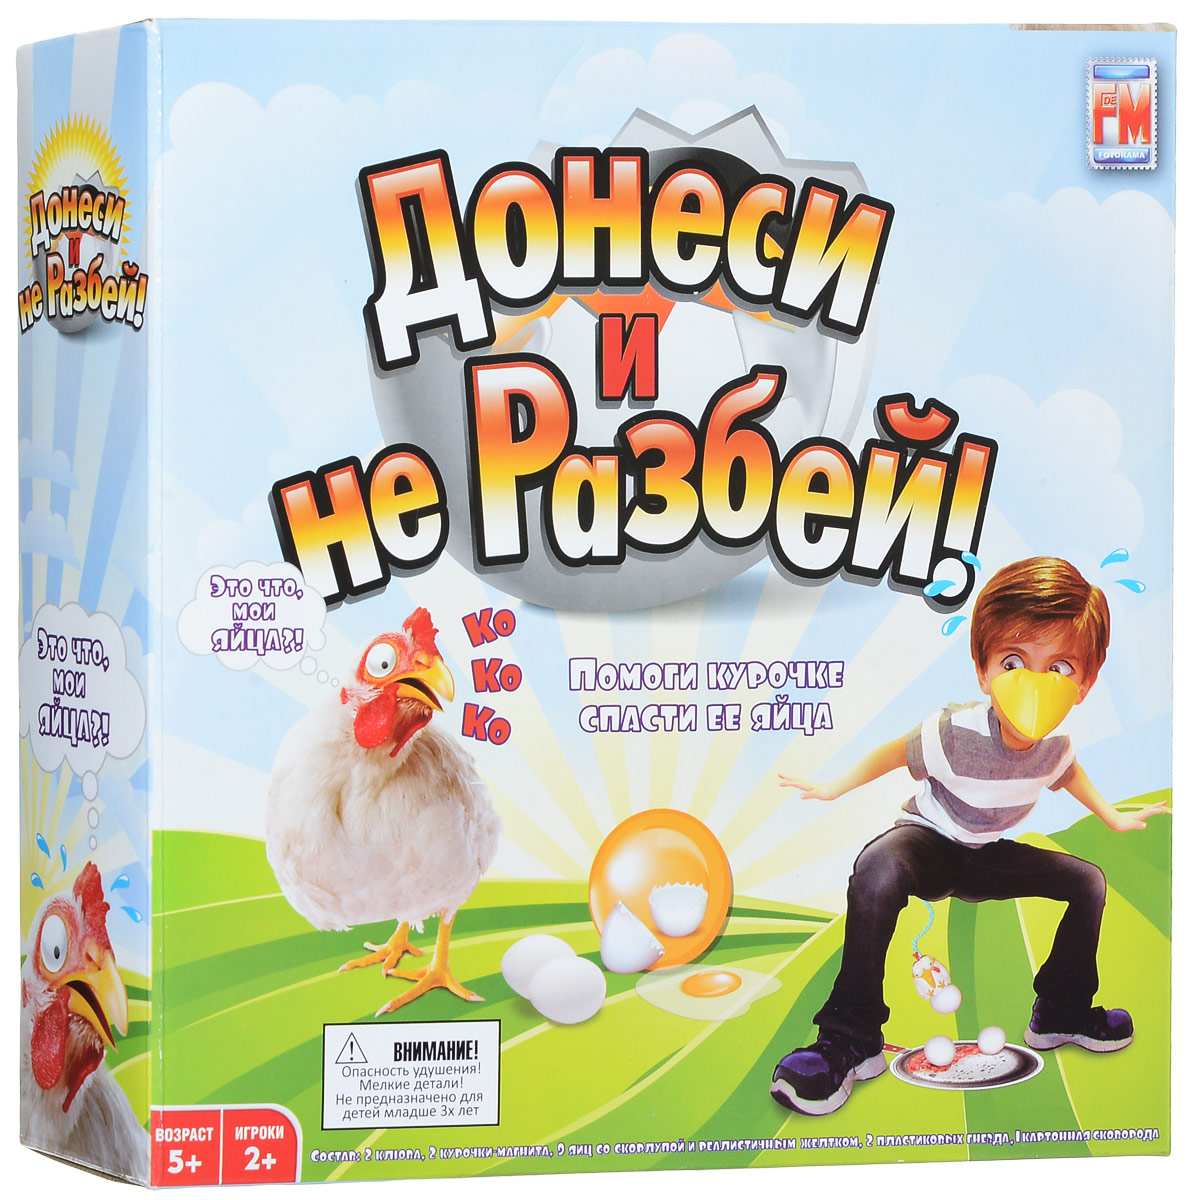 Разбей й. Игра Fotorama Донеси и не разбей. Настольная игра курица с яйцами. Настольные игры на ловкость и реакцию для детей. Игра Донеси яичко и не разбей.